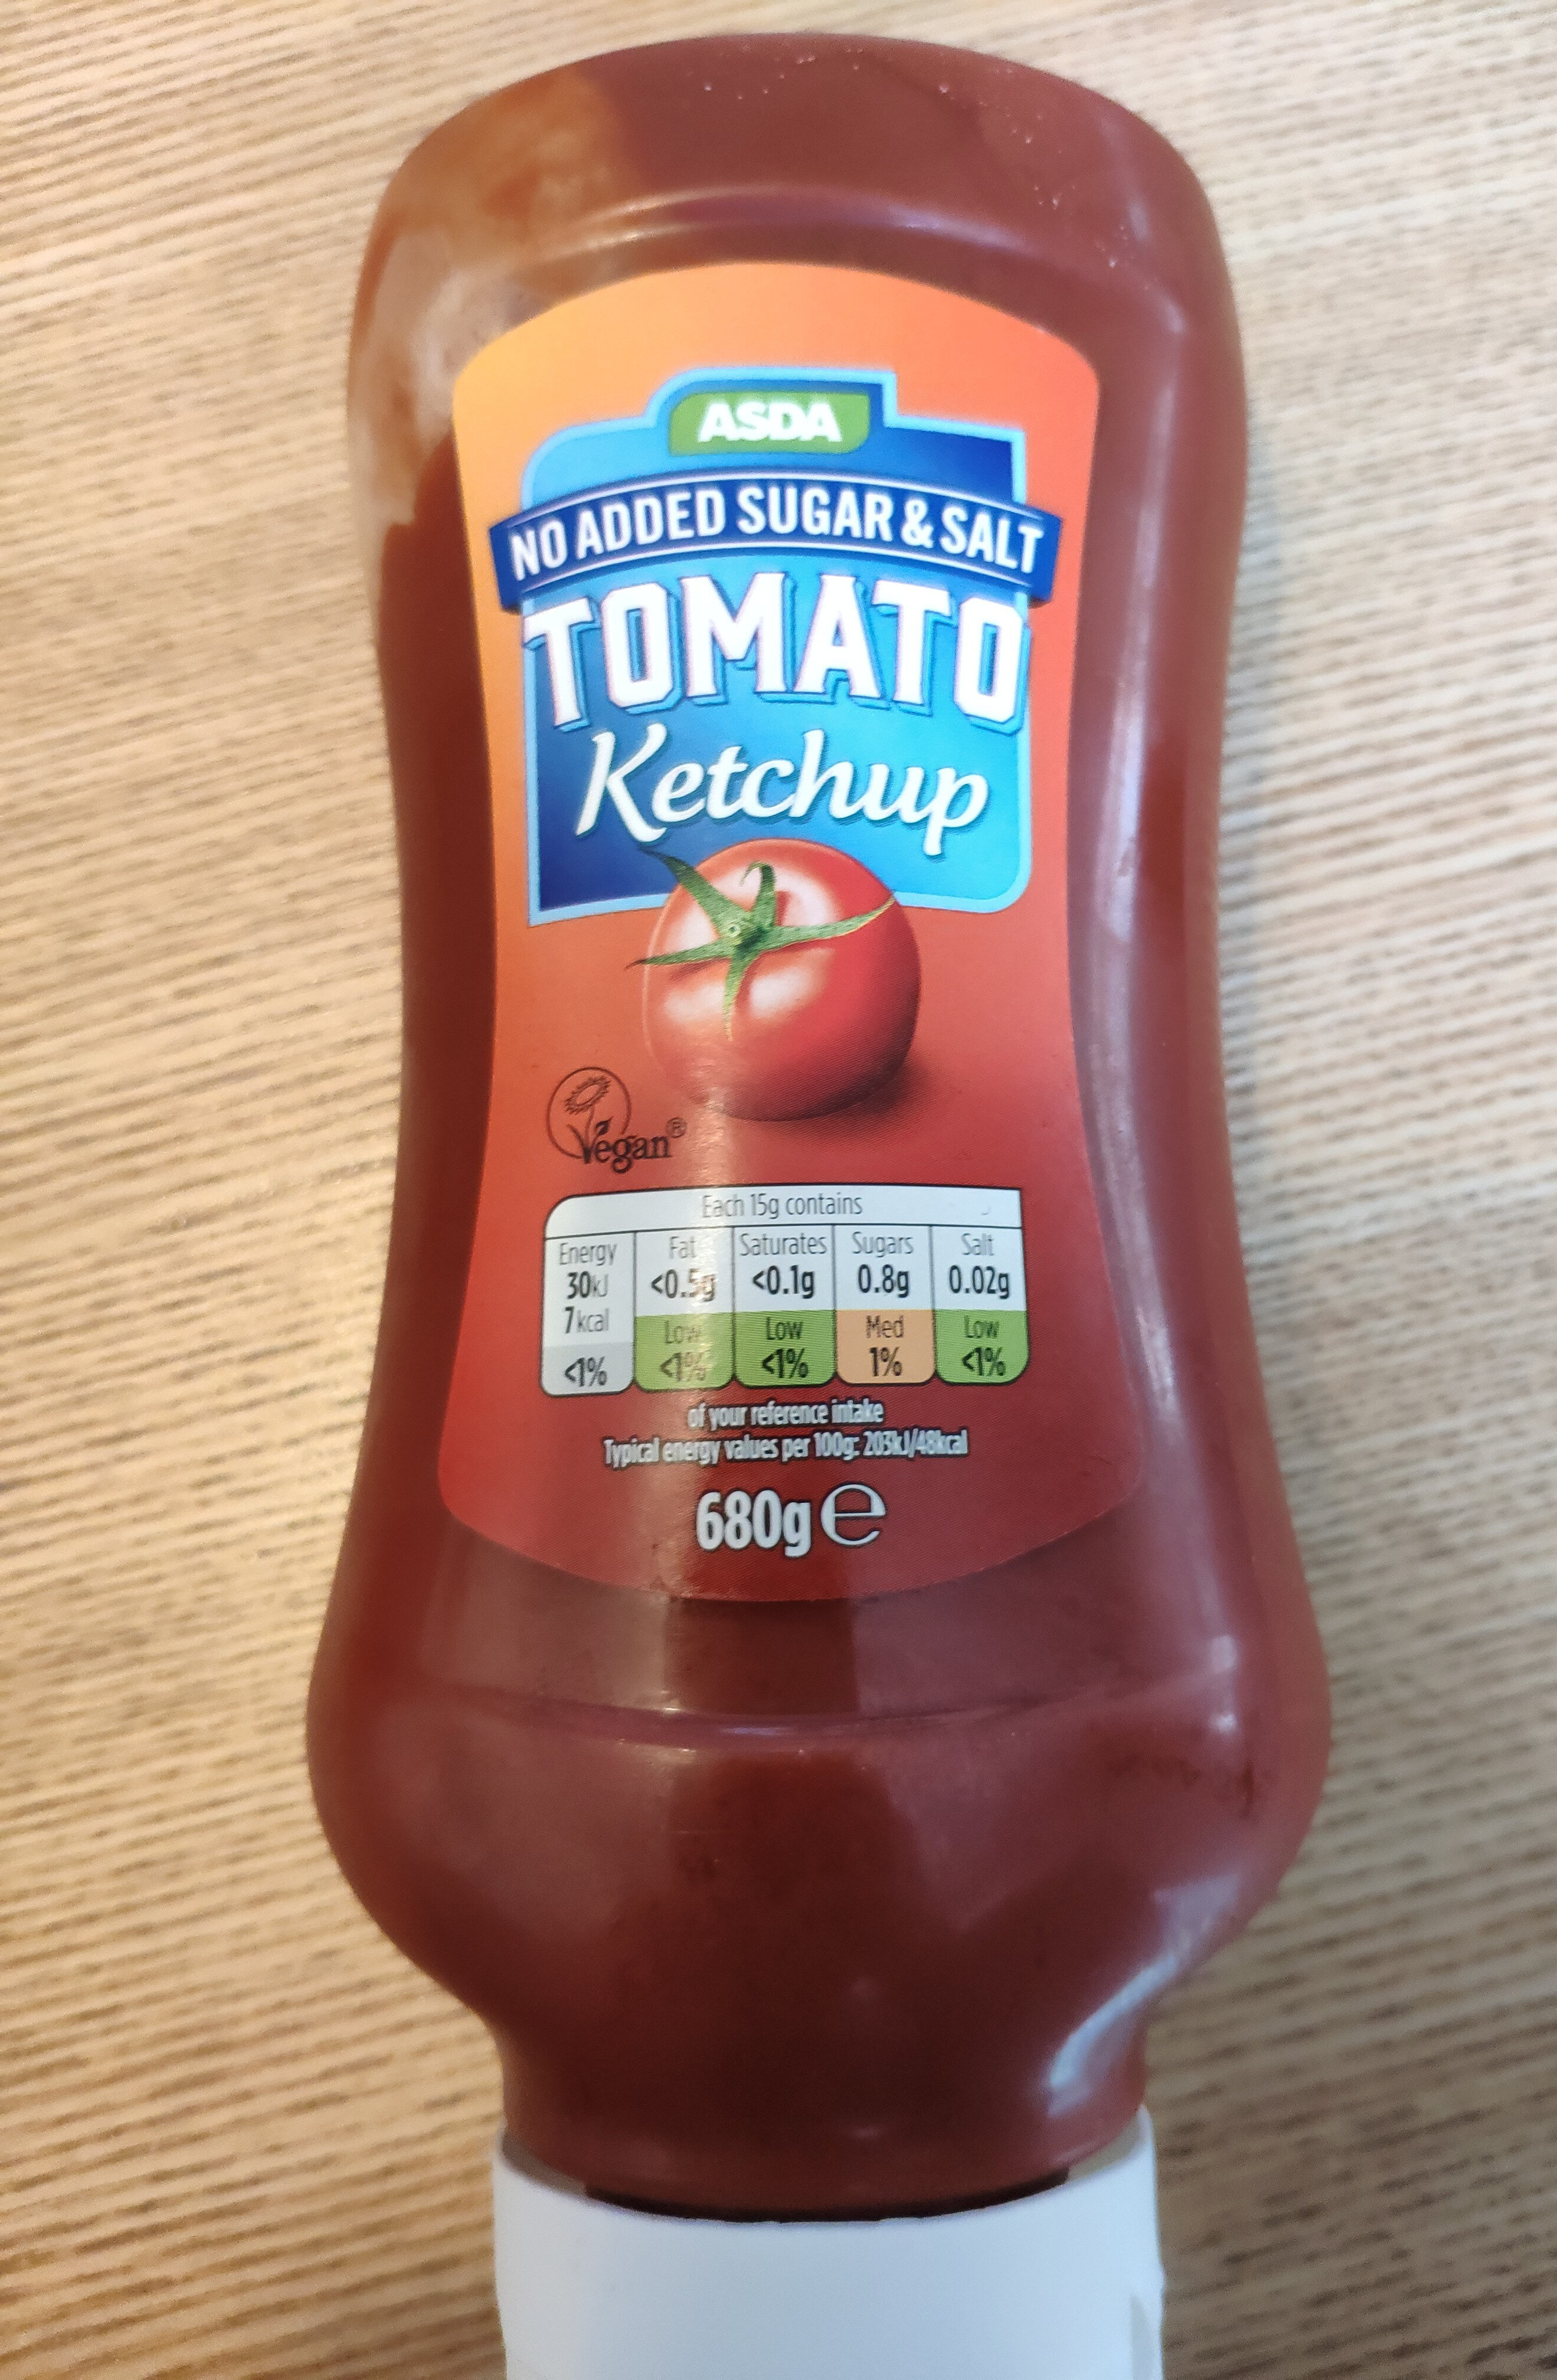 No added Sugar & Salt Tomato Ketchup - Produkt - en